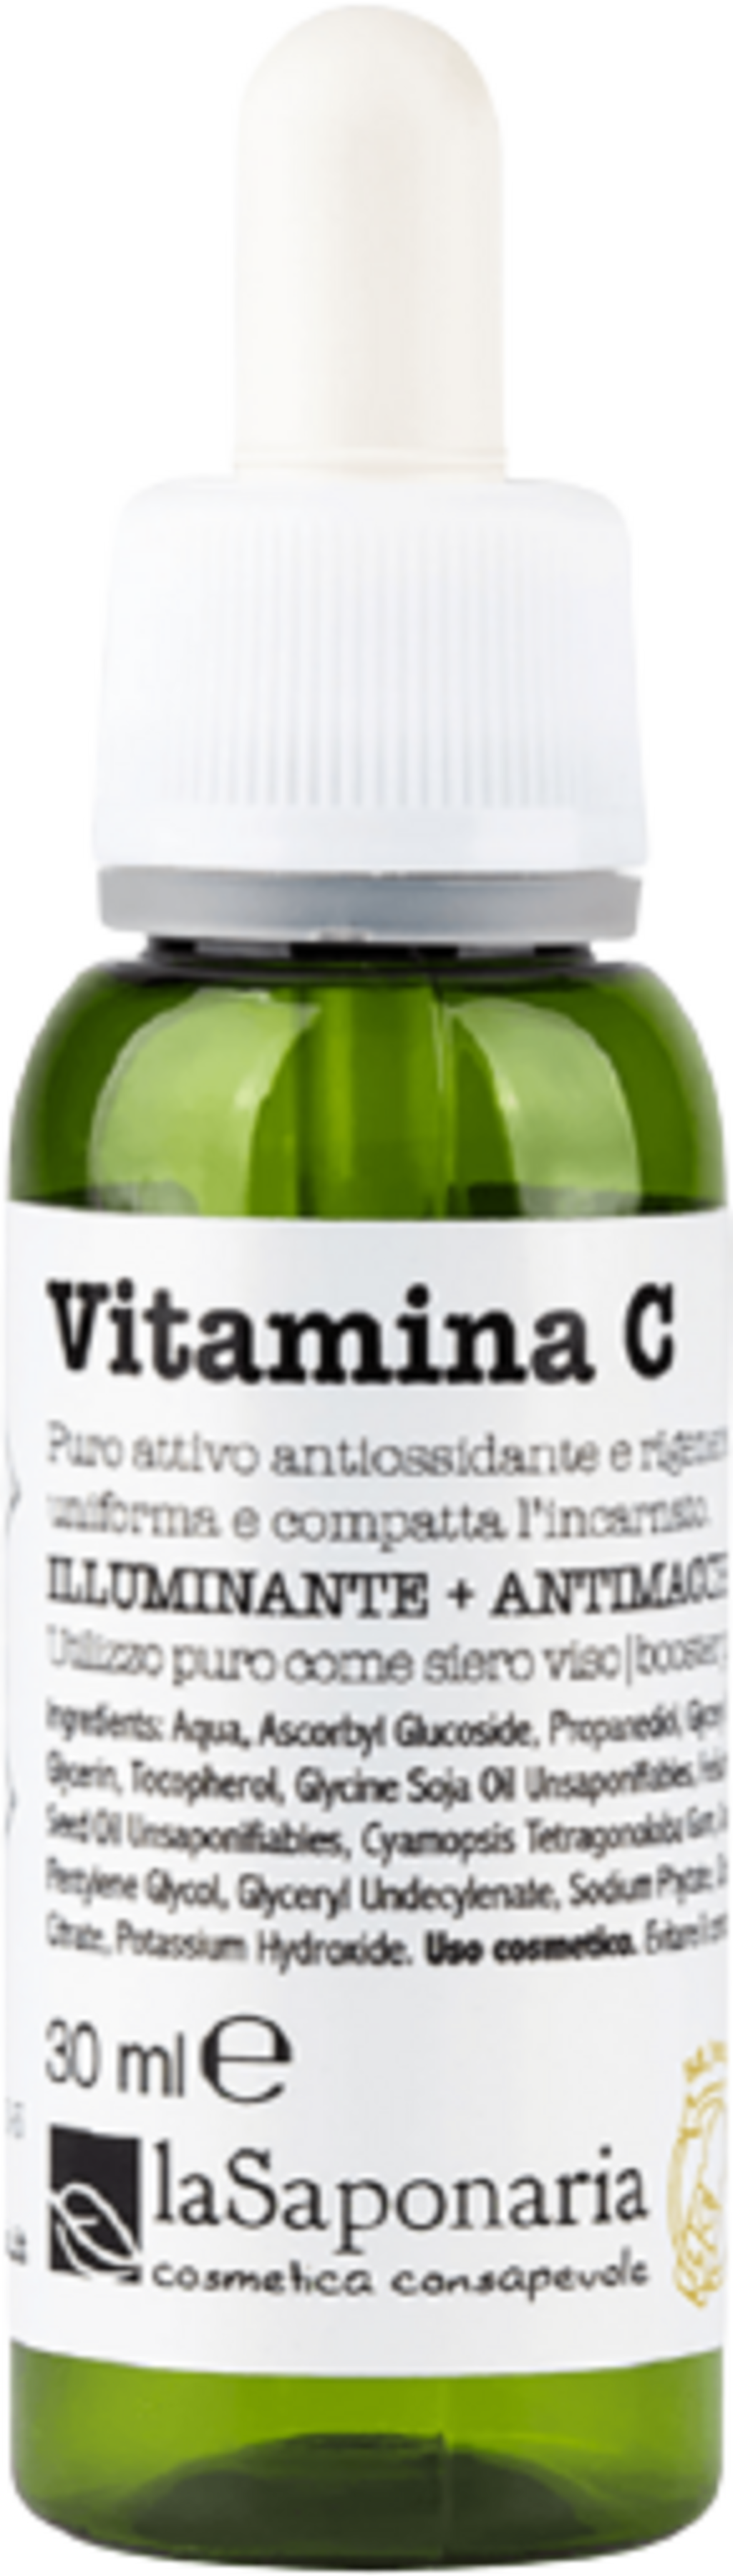 La Saponaria Vitamin C "Attivi Puri" - 30 ml